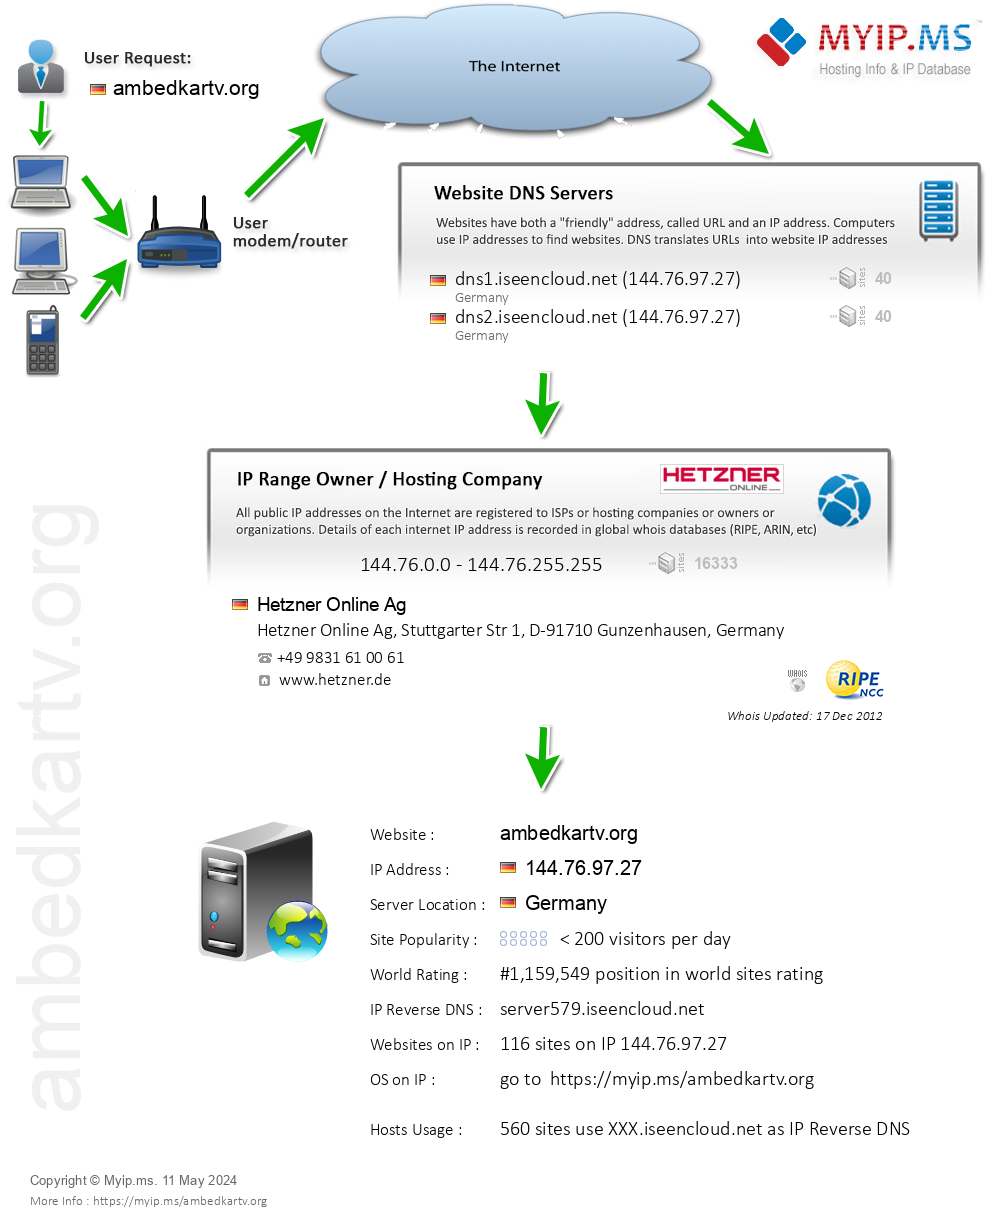 Ambedkartv.org - Website Hosting Visual IP Diagram